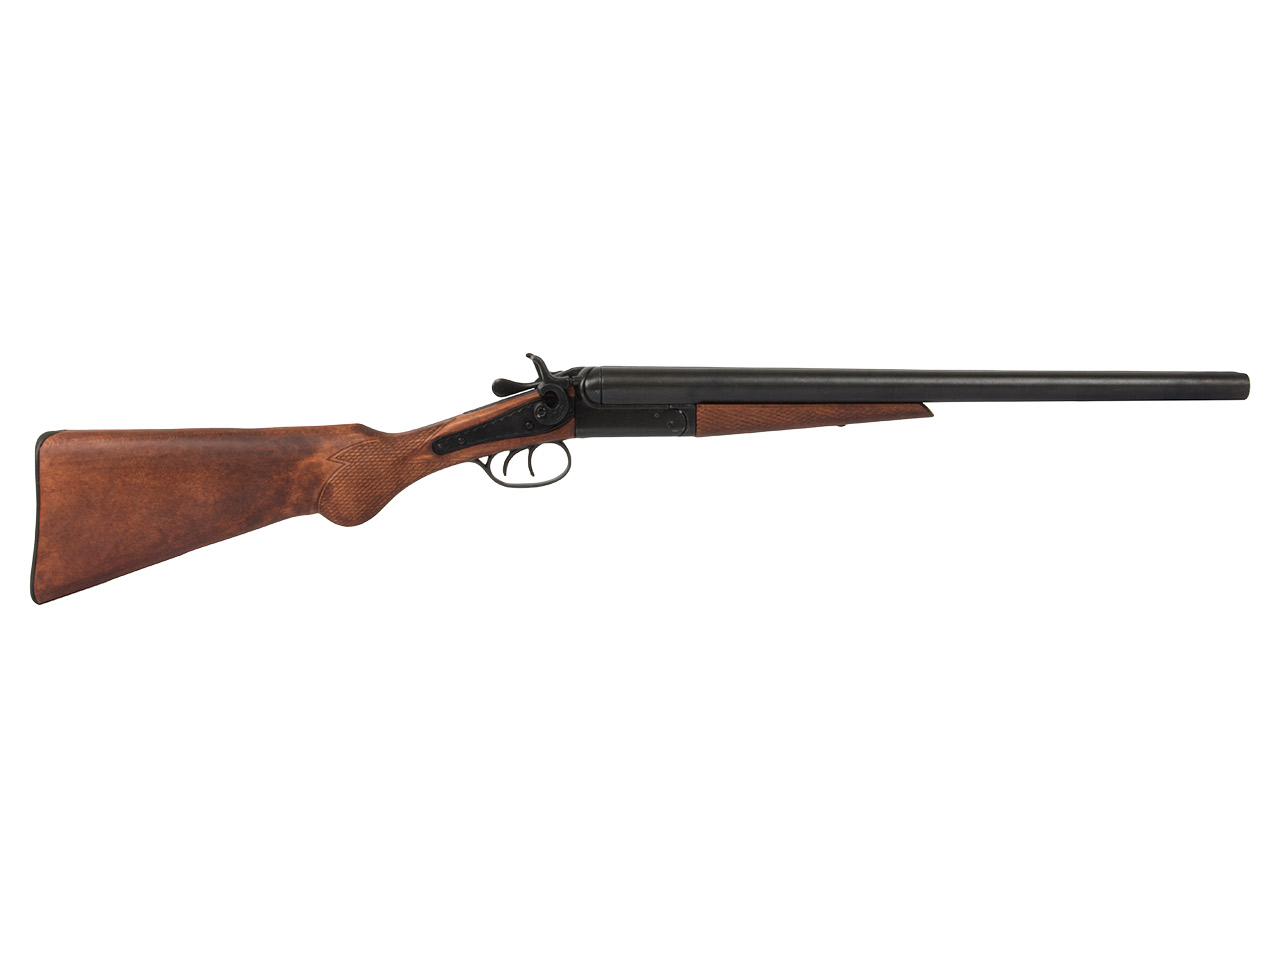 Deko Doppelhahn Schrotflinte Wyatt Earp Double Barrel Shotgun USA 1868 voll beweglich Länge 89 cm schwarz